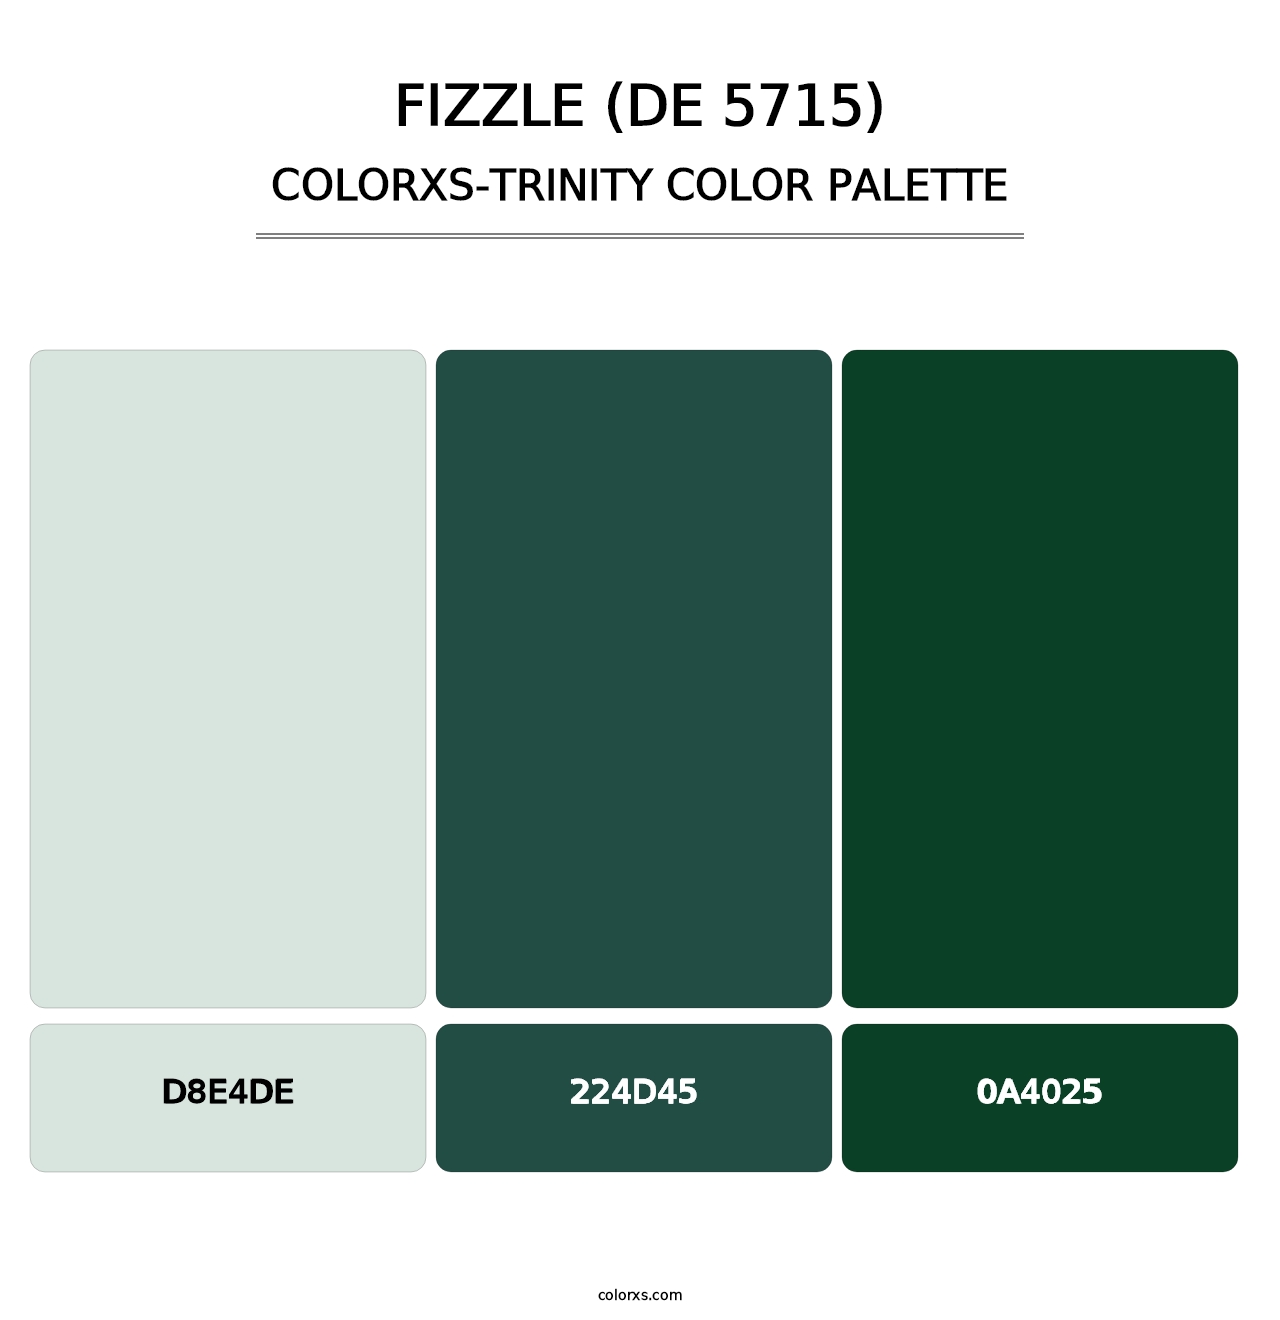 Fizzle (DE 5715) - Colorxs Trinity Palette